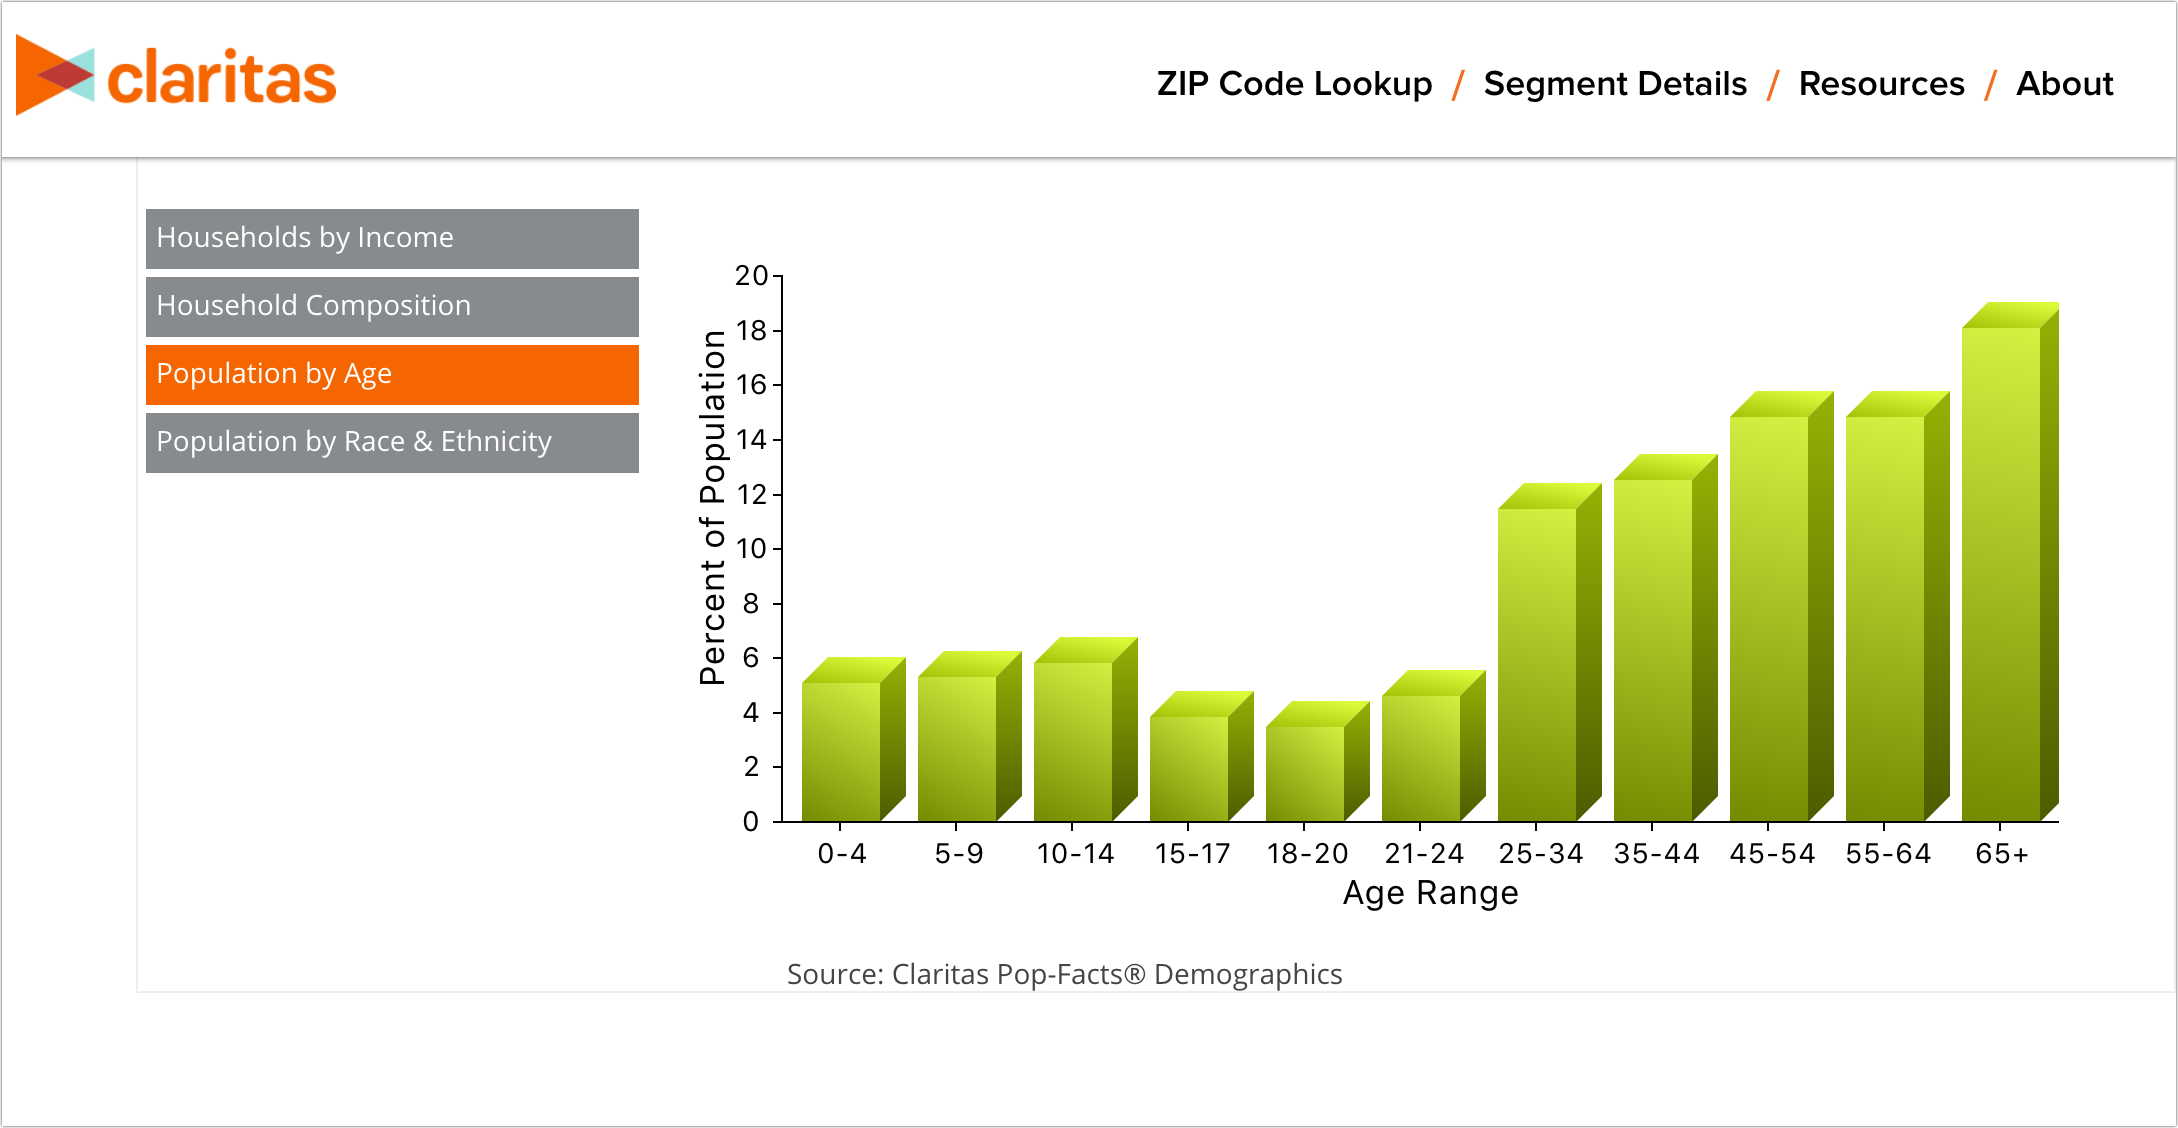 zip code look up by area code